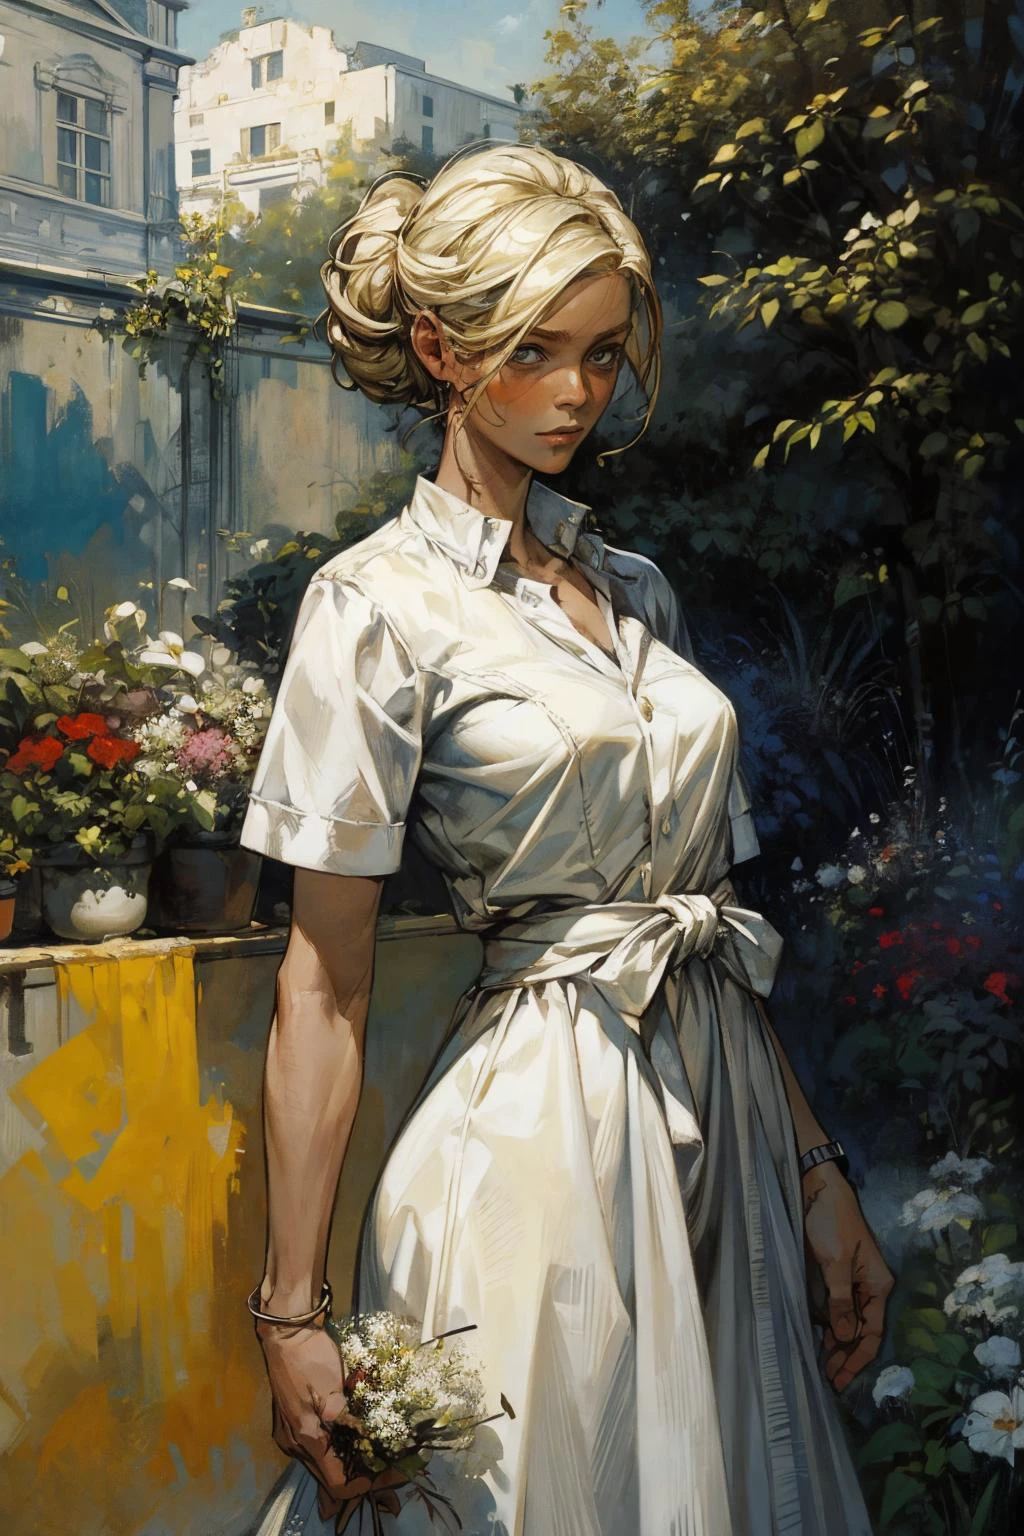 ผลงานชิ้นเอก, คุณภาพดีที่สุด, 
ผู้หญิงผมบลอนด์ 1 คน,ชุดเดรสสีขาว,สวน
 (ภาพถ่ายโดยอังเดร โคห์น, ฌอง-มิเชล บาสเกียต)
